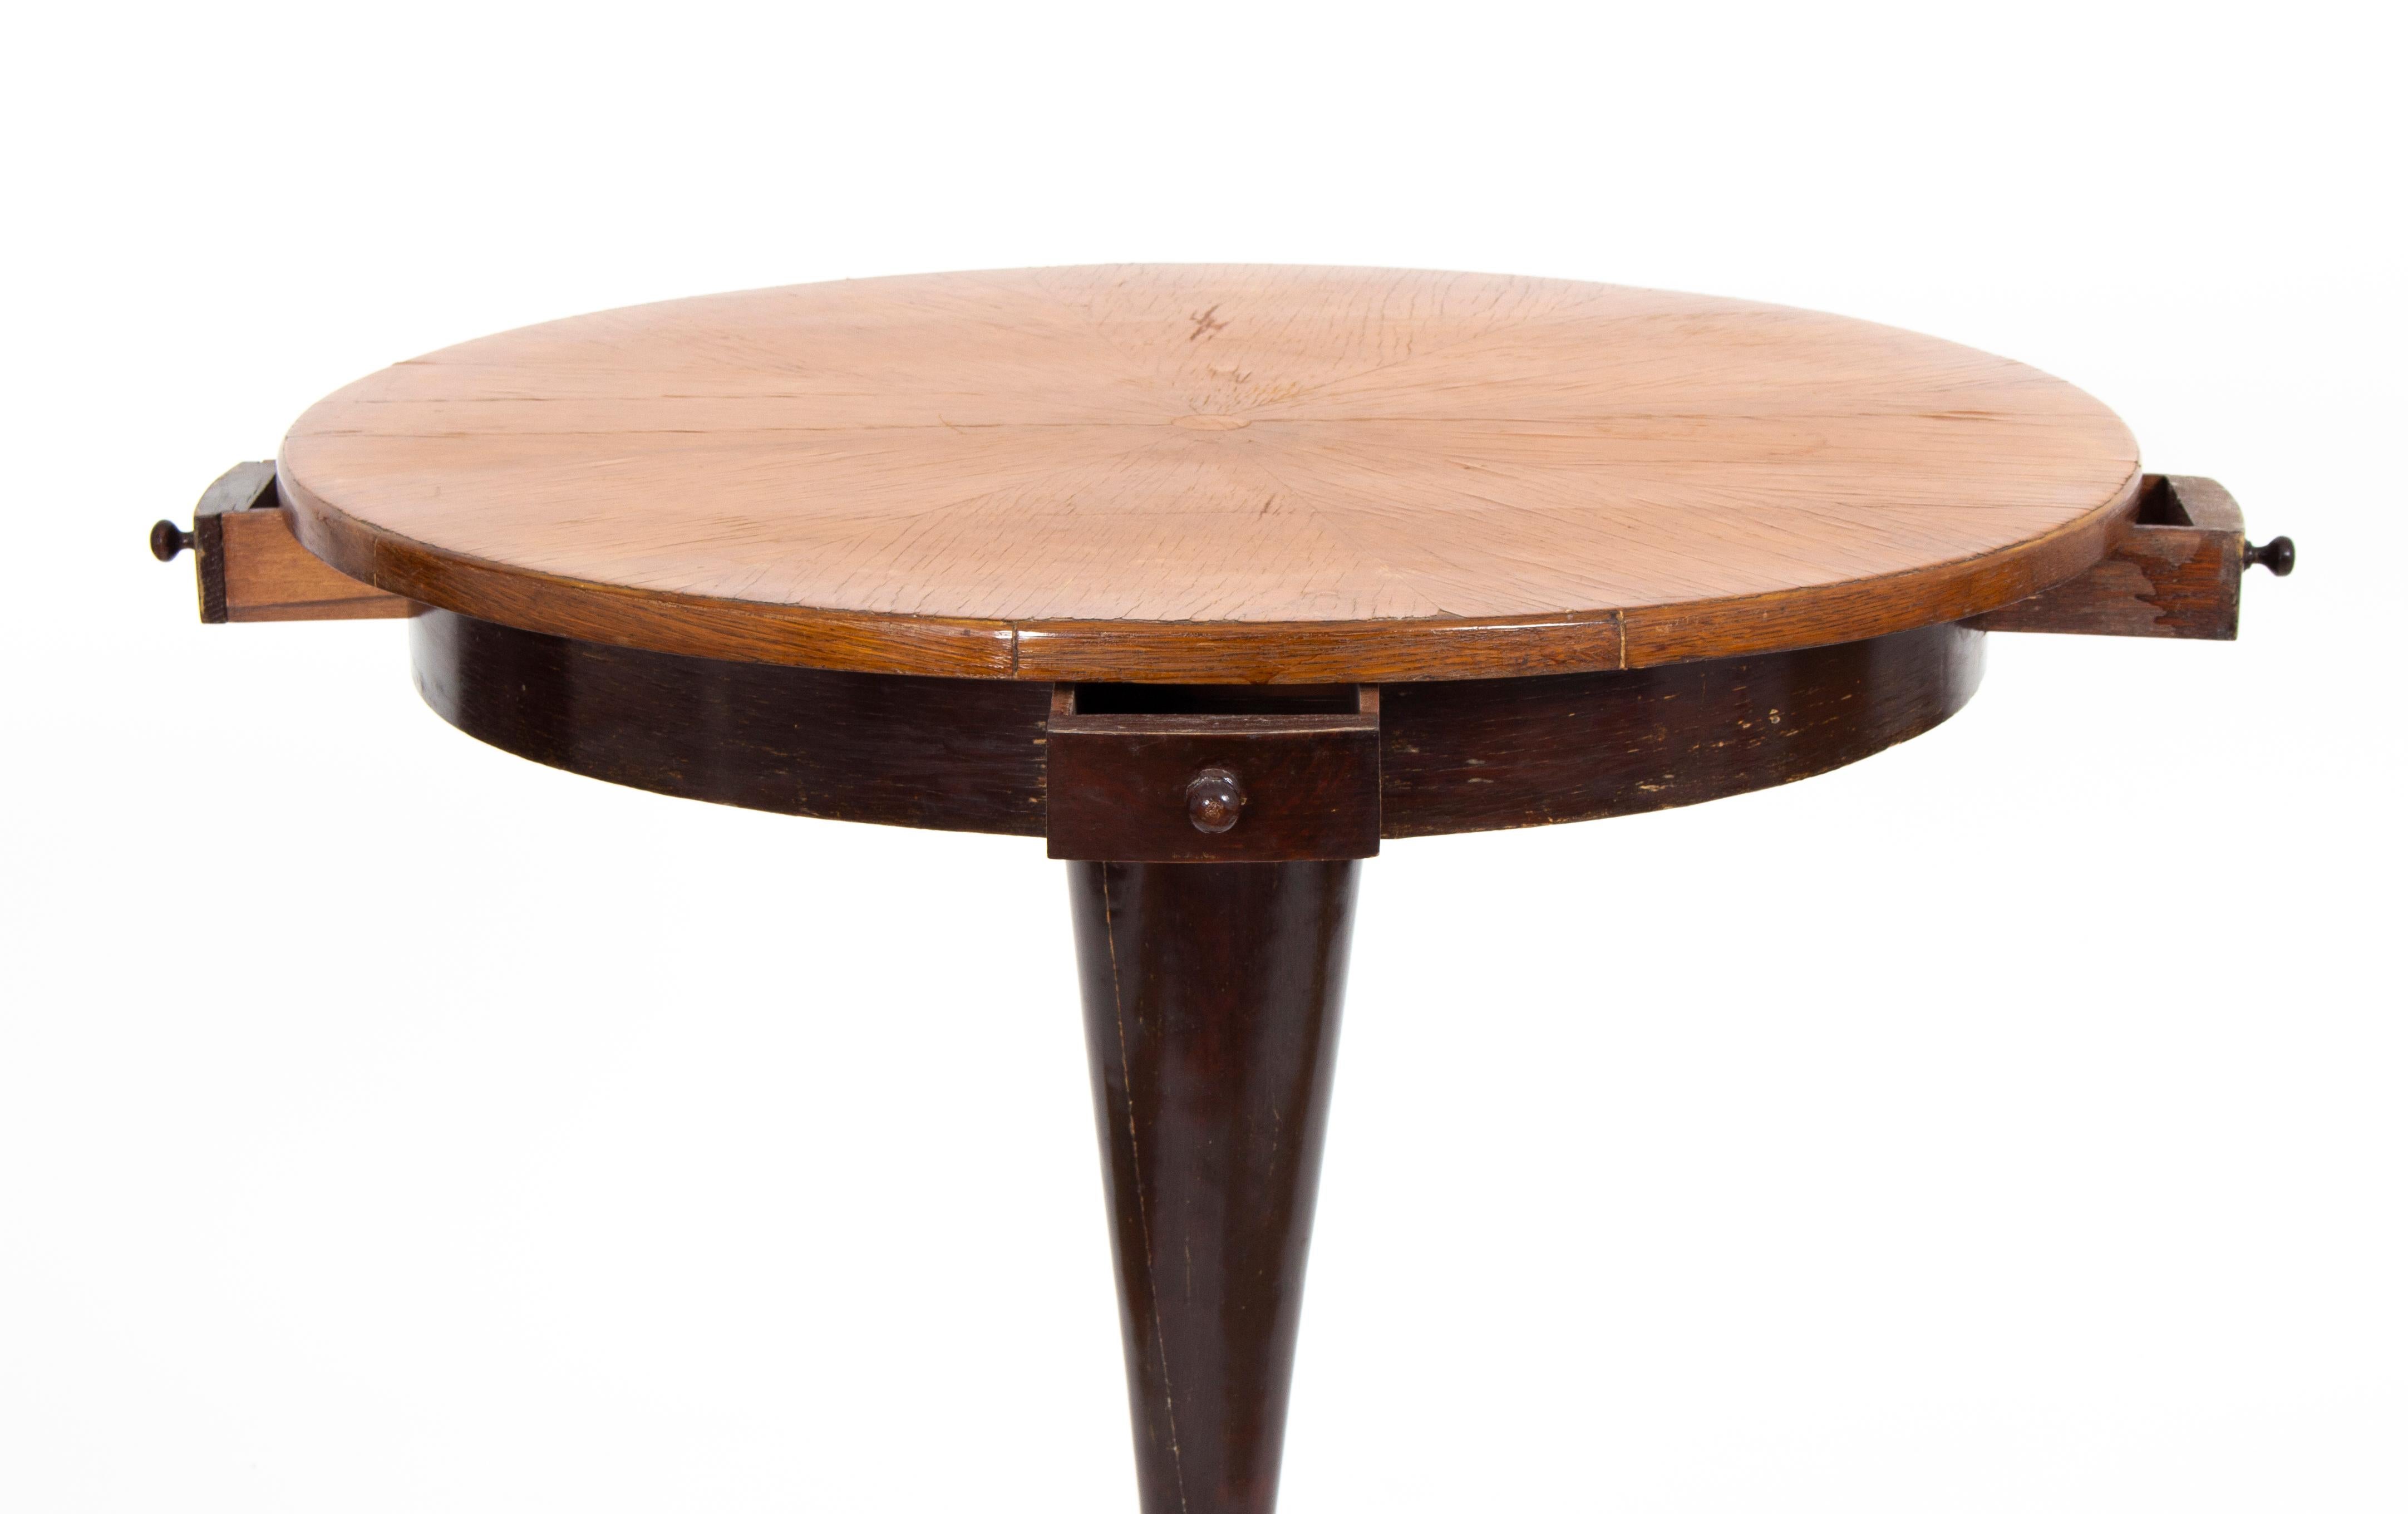 Jugendstil-Spieltisch, möglicherweise aus Wien, aus den 1910er Jahren. Der Tisch hat 4 kleine Schubladen. Der Tisch aus Kiefernholz hat ein Nussbaumfurnier, der untere Teil hat eine Kupferabdeckung.
 